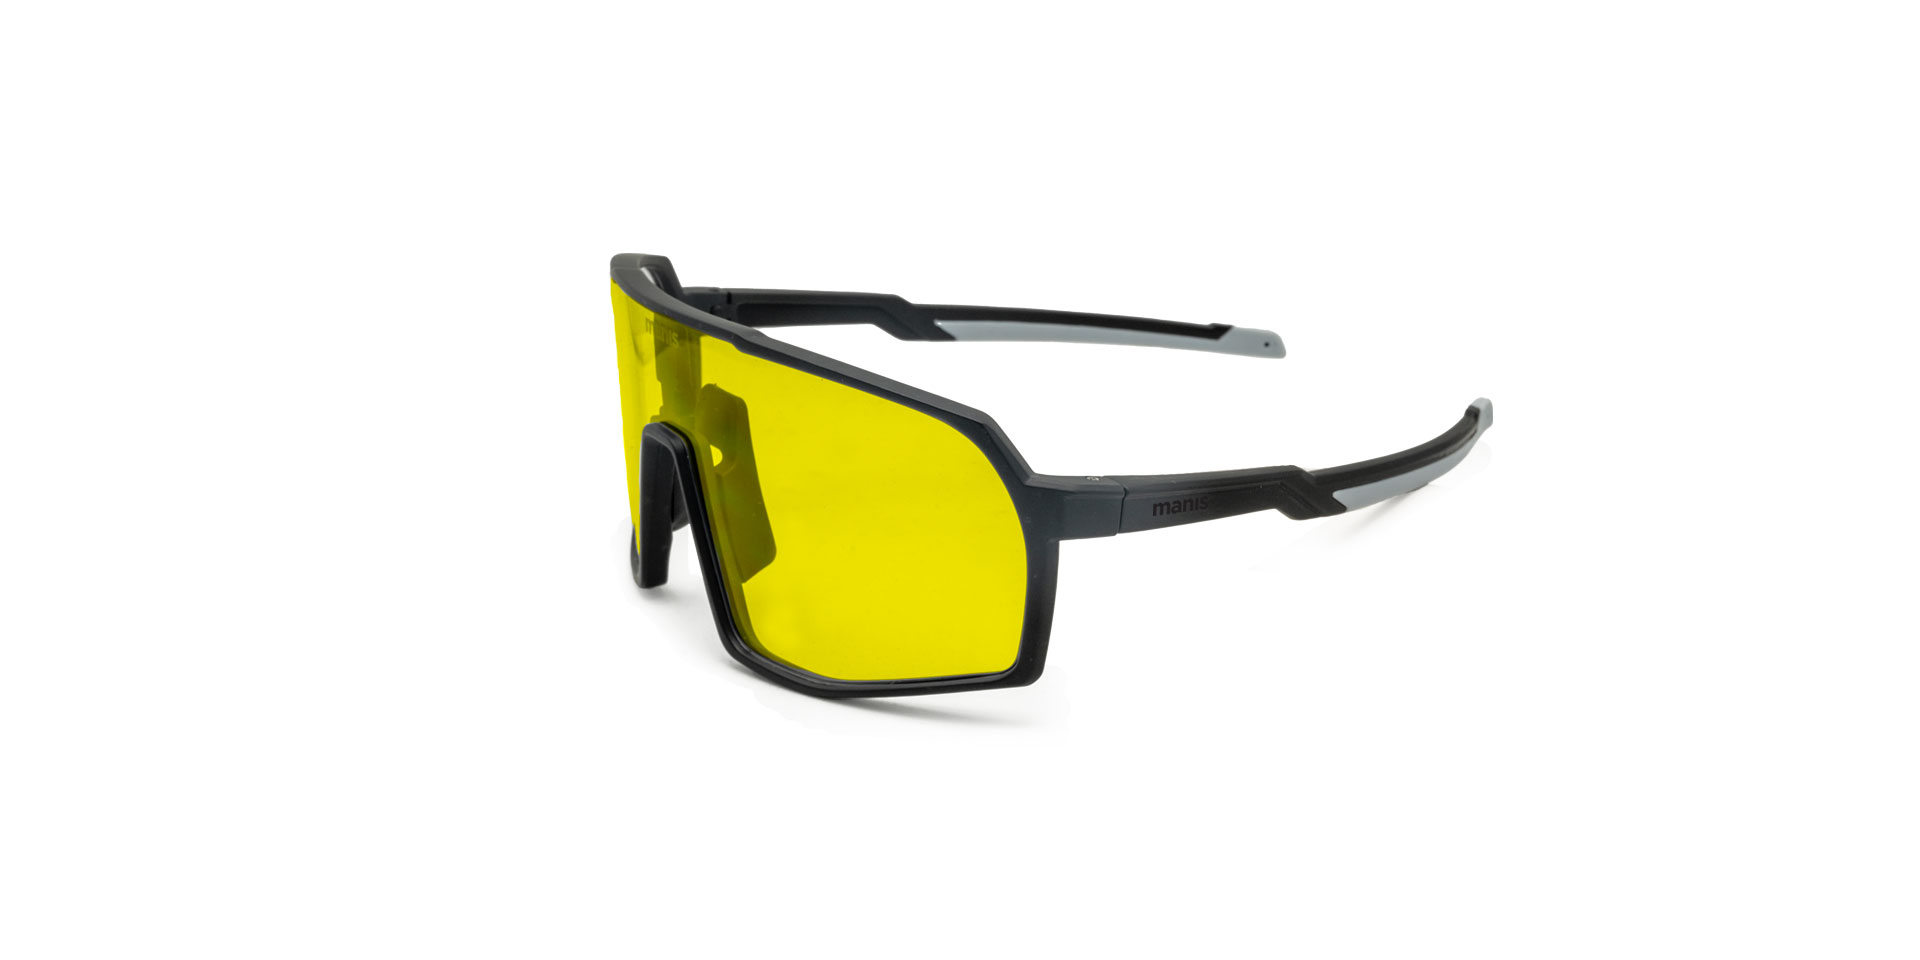 tokul manis optics mountain bike glasses eyewear protection